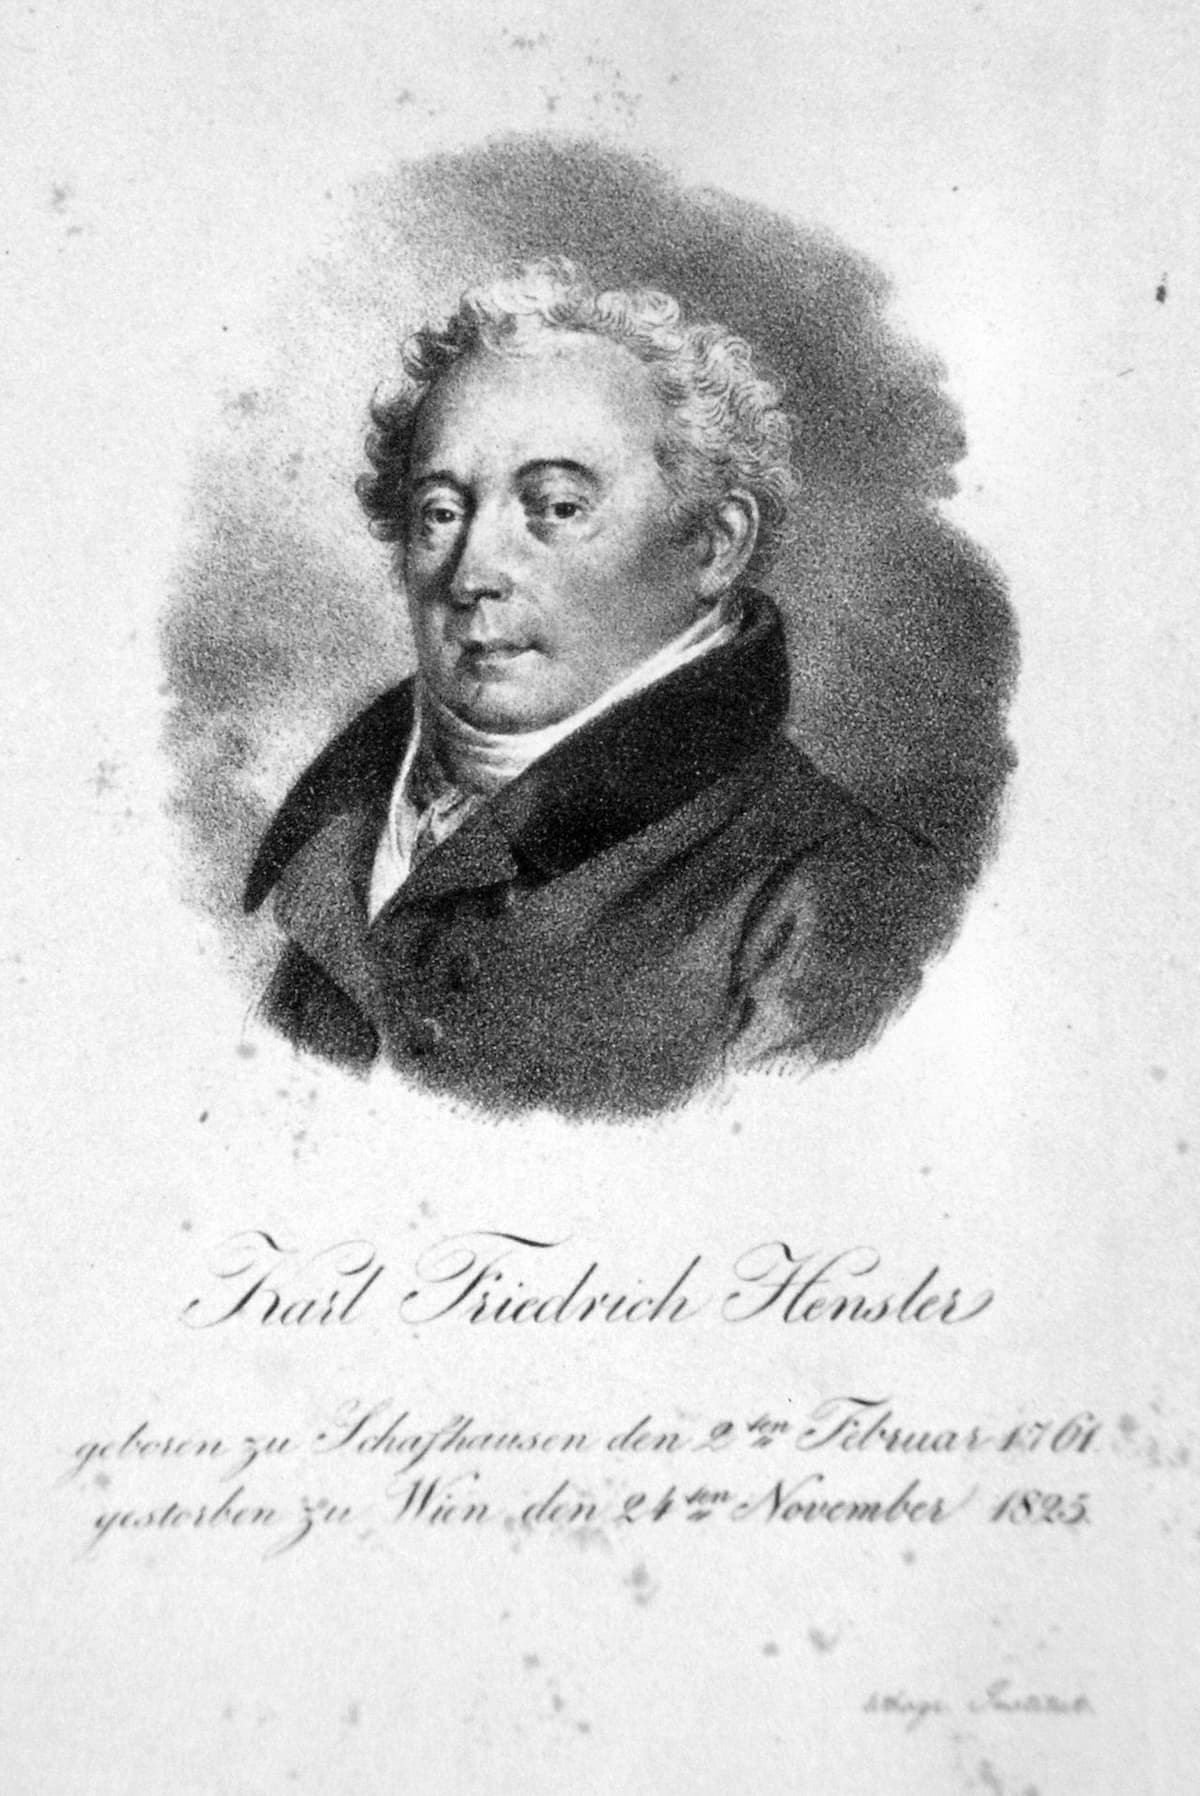 Joseph Lanzedelly the Elder: Karl Friedrich Hensler, c.1820